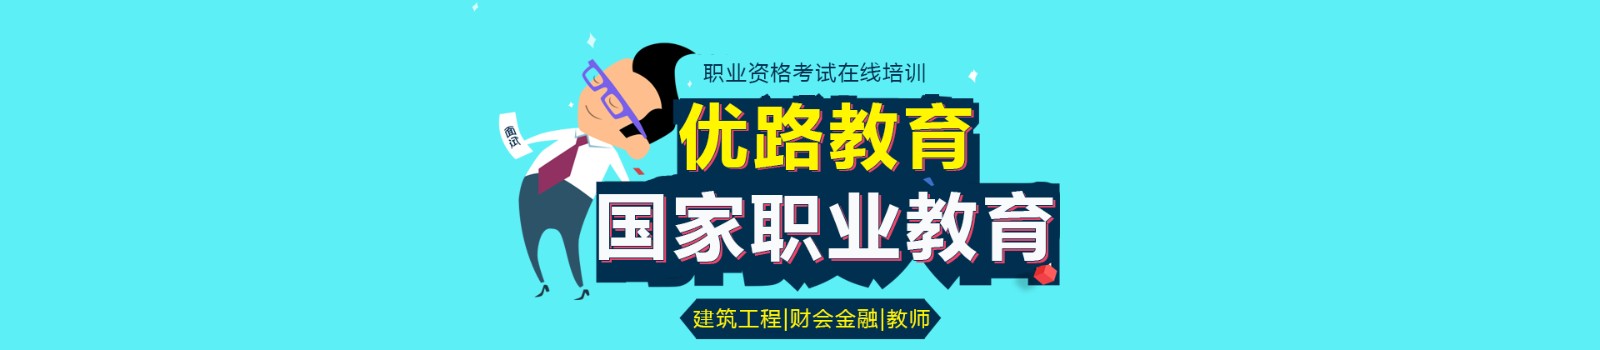 广州优路教育 横幅广告